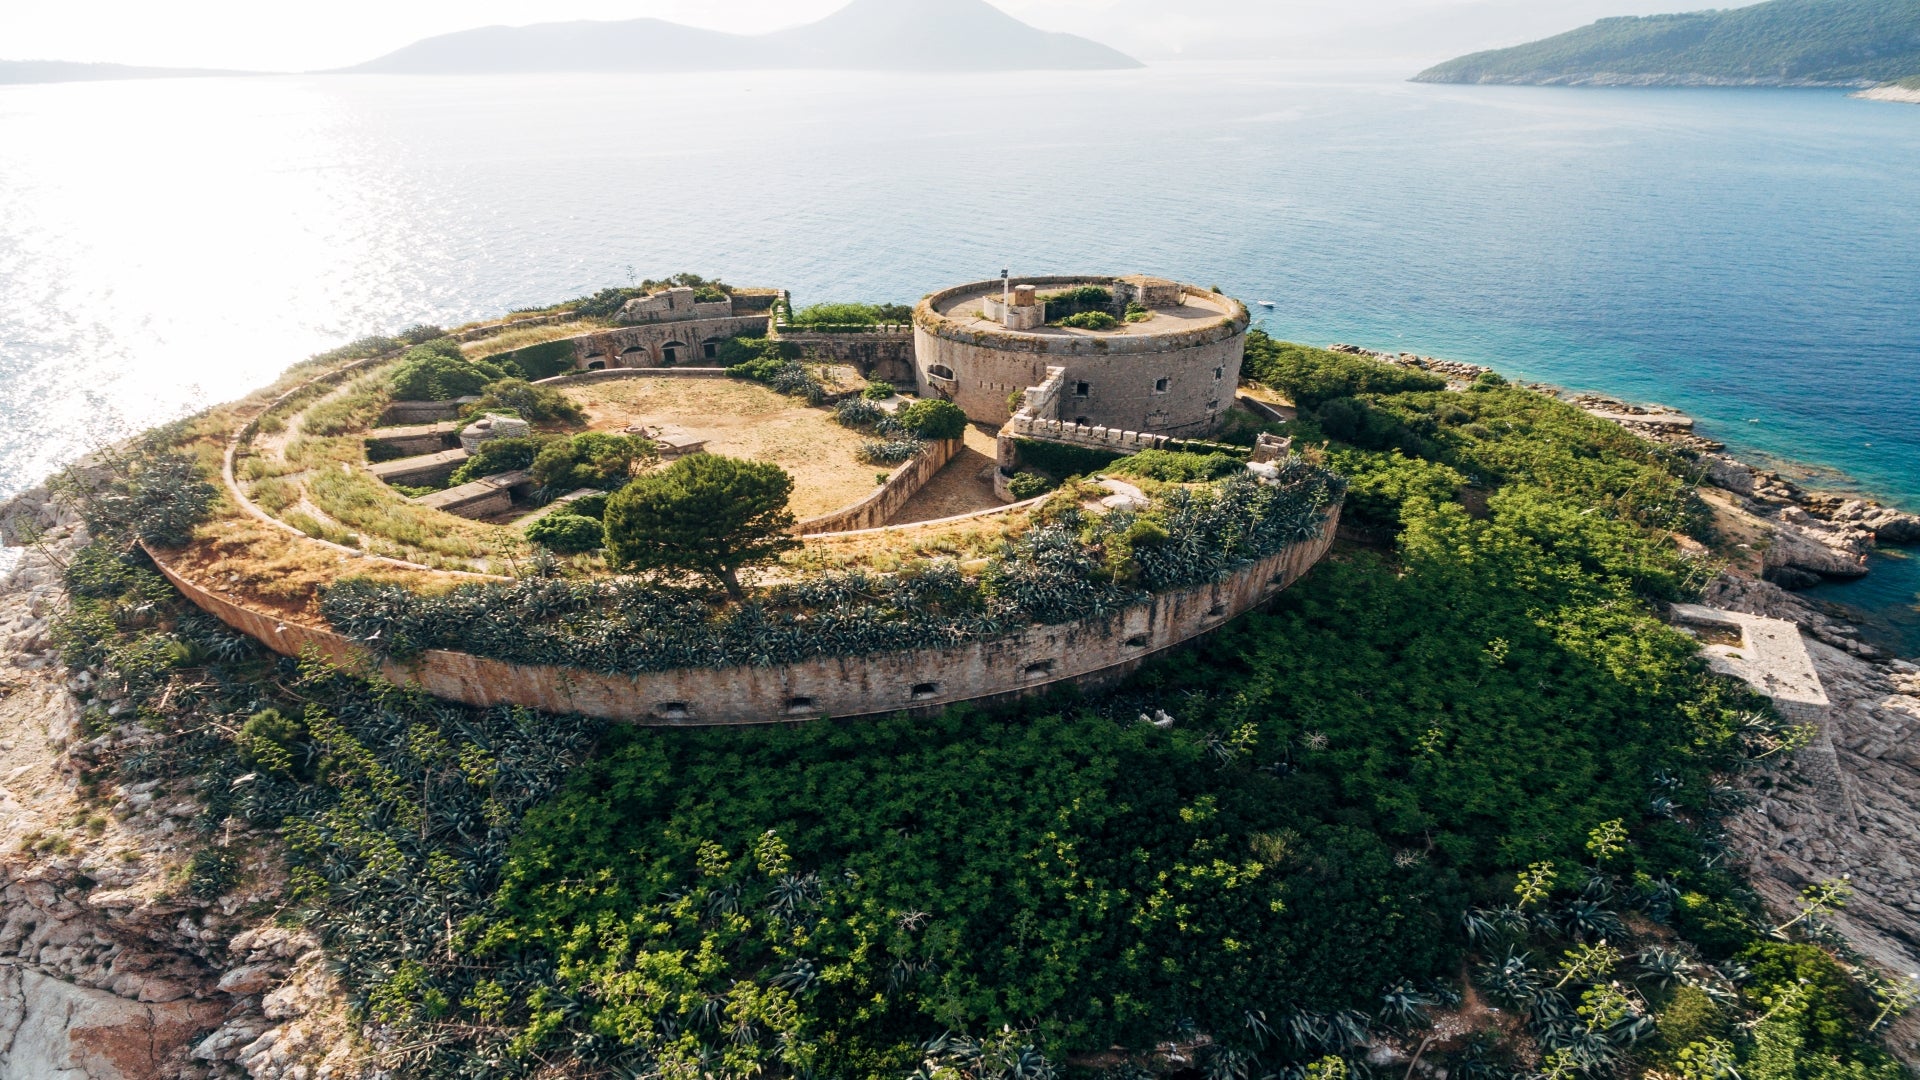 mamula-fortress-among-green-bushes-on-a-rocky-island-boka-bay